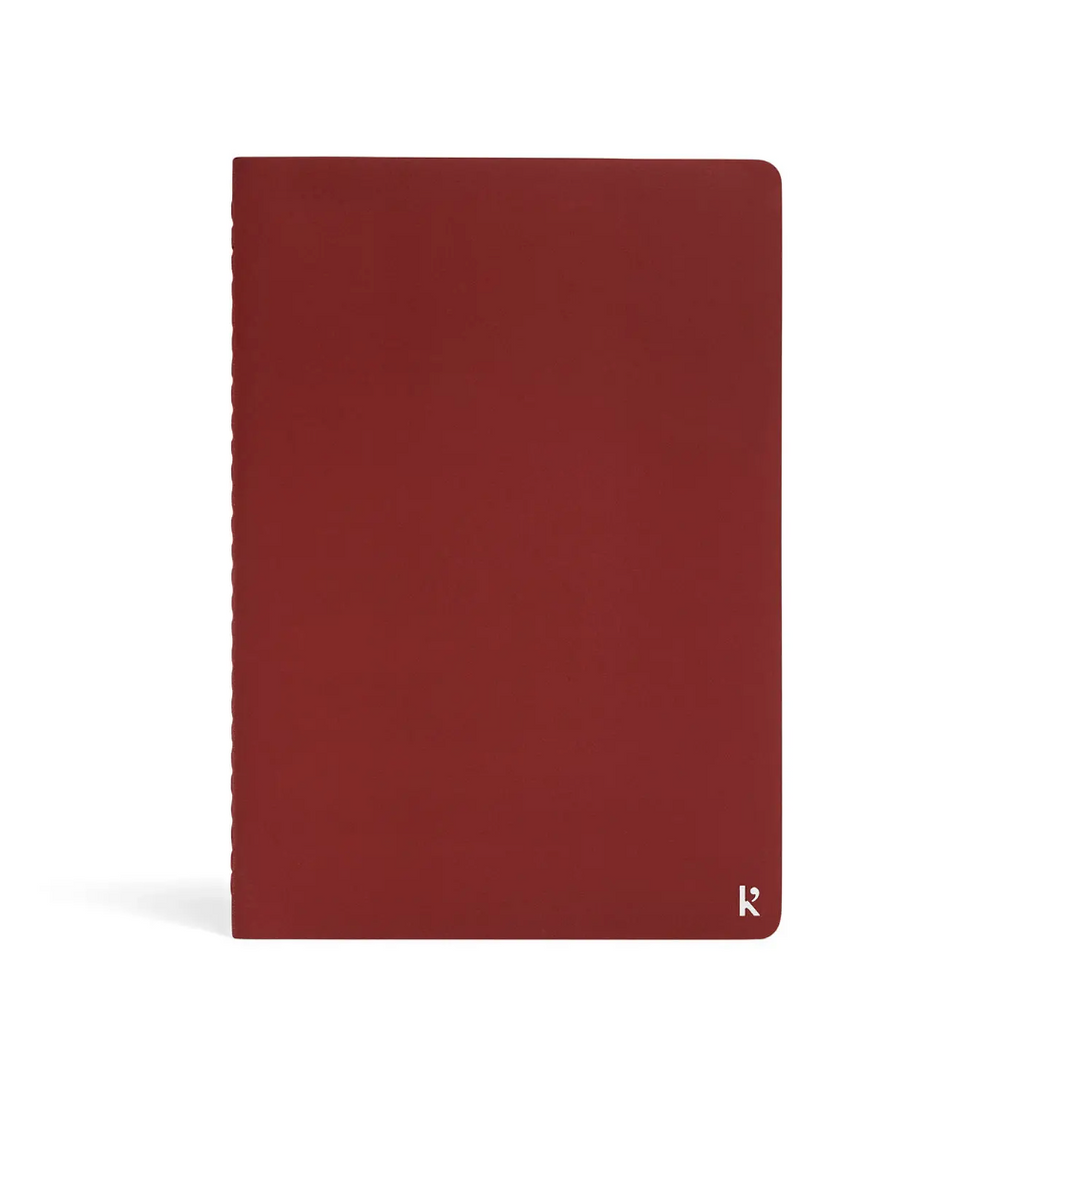 Stone Paper Journal Set - A5 Pinot